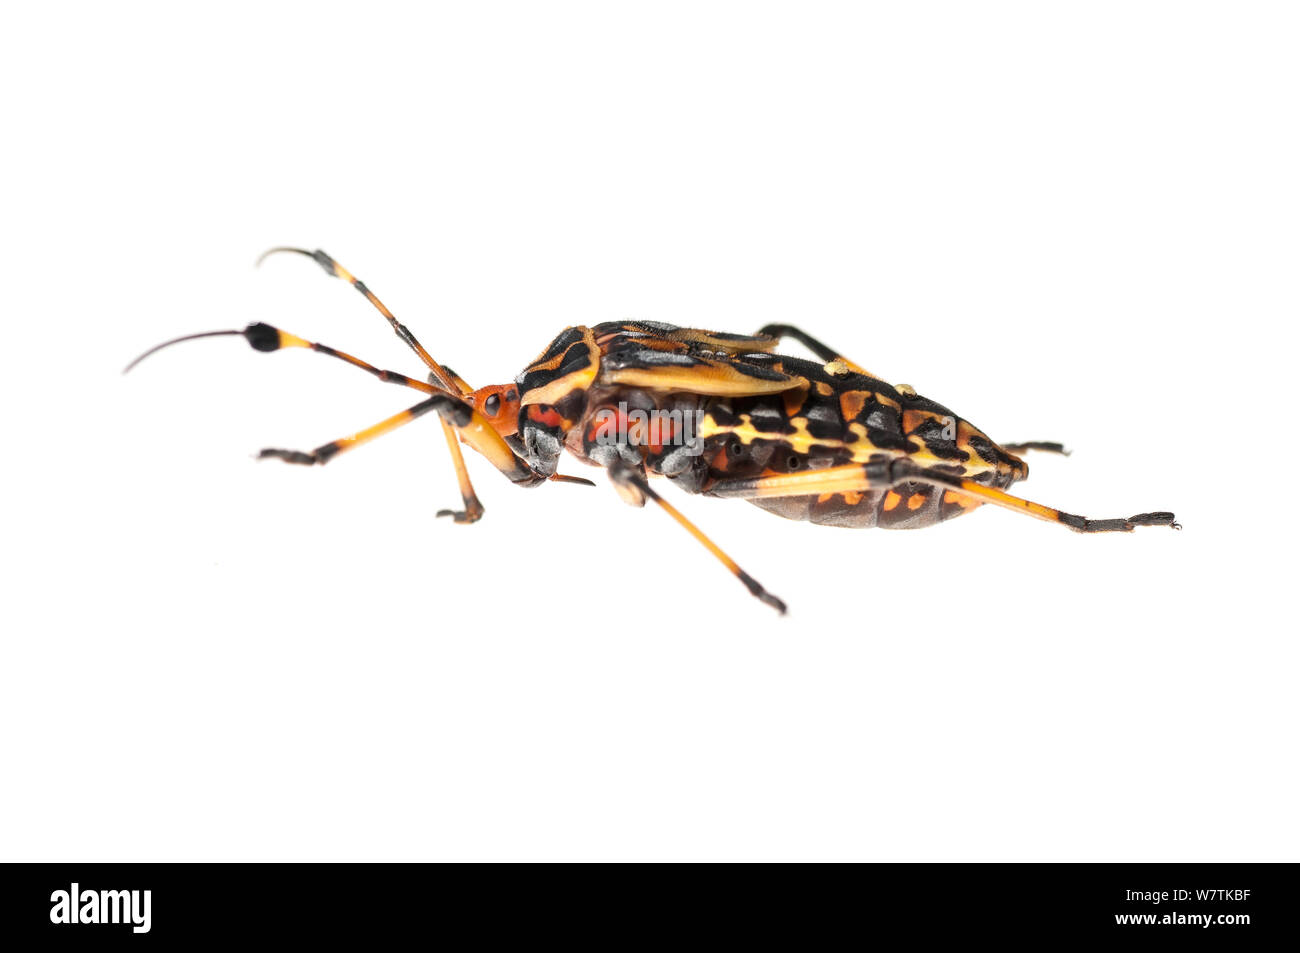 Nymphe bug géant mesquite (Thasus sp.), d'Iwokrama en Guyane. Projet d'Meetyourneighbors.net Banque D'Images